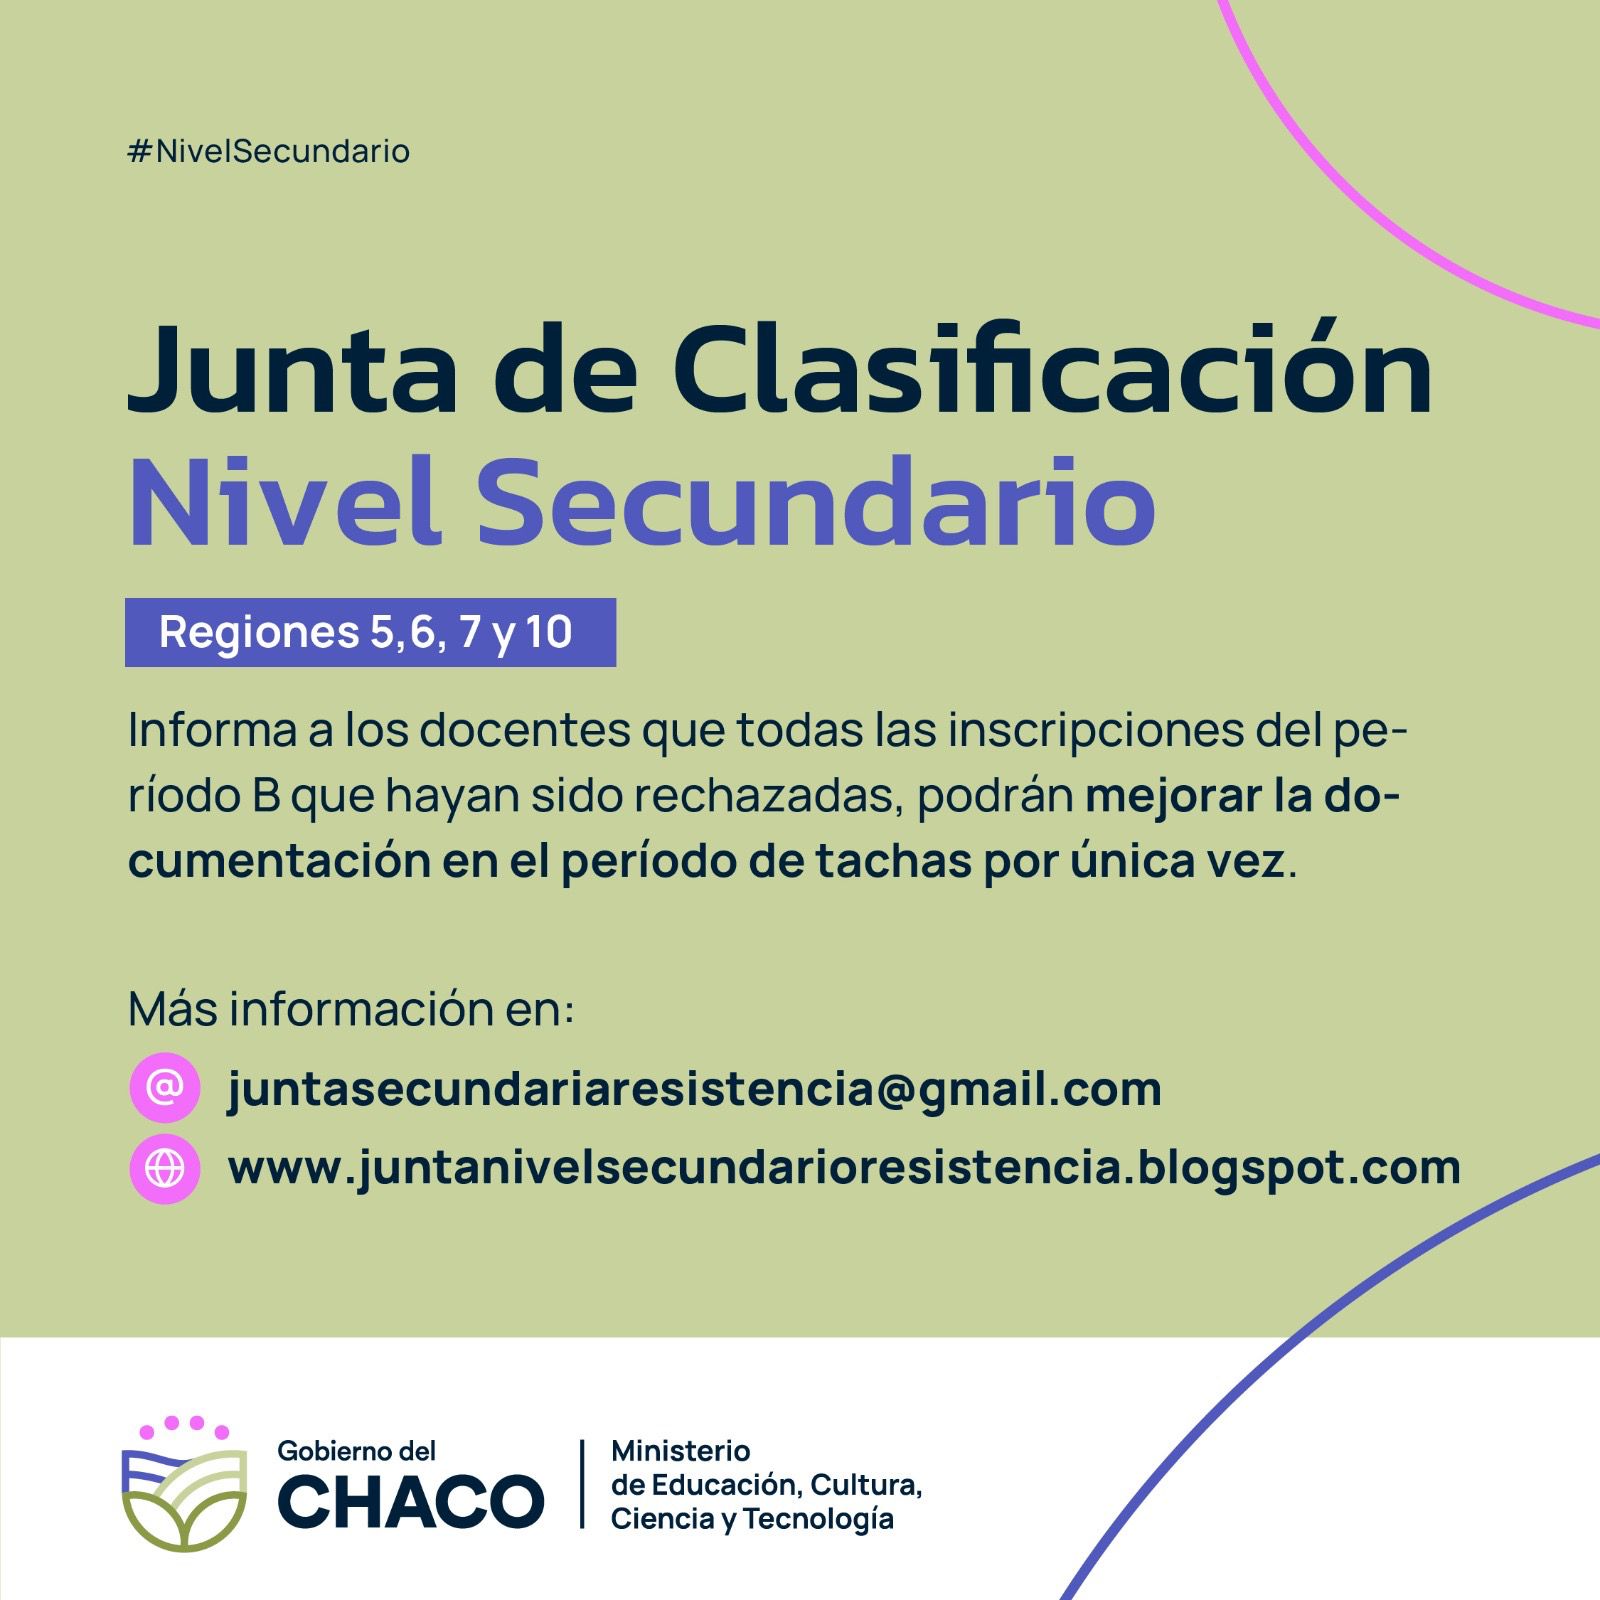 JUNTA DE CLASIFICACIÓN DE NIVEL SECUNDARIO RESISTENCIA: PERIODO DE TACHAS